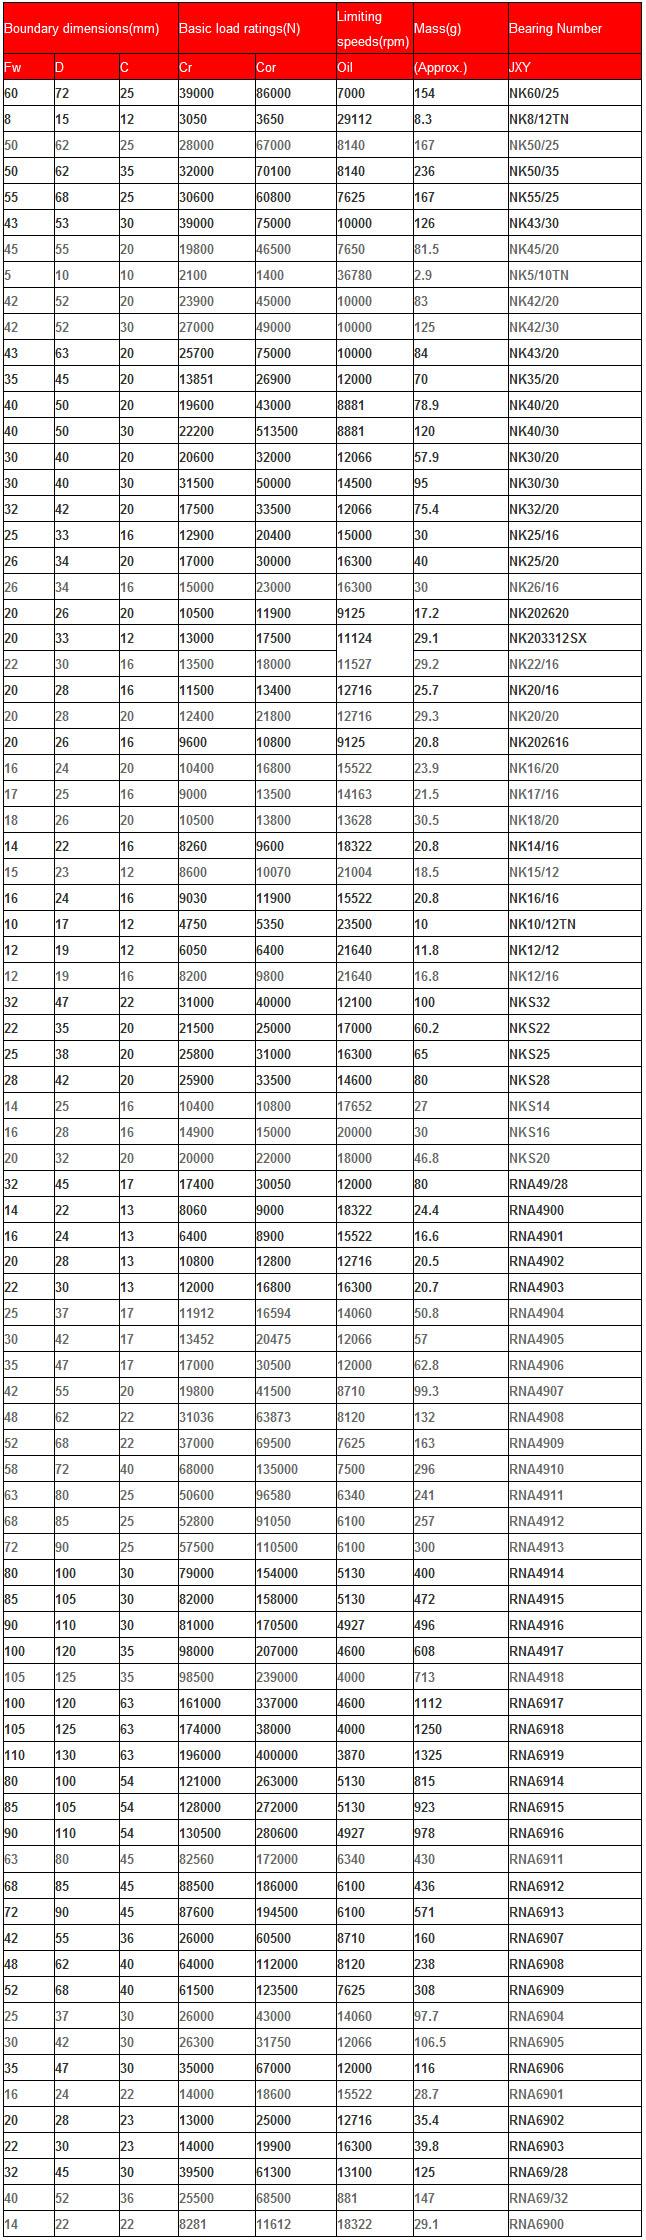 NK60/25 | NK8/12TN | NK50/25 | NK50/35 | NK55/25 | NK43/30 | NK45/20 | NK5/10TN | NK42/

20 | NK42/30 | NK43/20 | NK35/20 | NK40/20 | NK40/30 | NK30/20 | NK30/30 | NK32/20 | NK25

/16 | NK25/20 | NK26/16 | NK202620 | NK203312SX | NK22/16 | NK20/16 | NK20/20 | NK202616 | NK16/20 | NK17/16 | NK18/20 | NK14/16 | NK15/12 | NK16/16 | NK10/12TN | NK12/12 | NK12/16 | NKS32 | NKS22 | NKS25 | NKS28 | NKS14 | NKS16 | NKS20 | RNA49/28 | RNA4900 | RNA4901 | RNA4903 | RNA4904 | RNA4905 | RNA4906 | RNA4907 | RNA4908 | RNA4909 | NNA4910 | RNA4911 | RNA4912 | RNA4913 | RNA4914 | RNA4915 | RNA4916 | RNA4917 | RNA4918 | RNA6917 | RNA6918 | RNA6919 | RNA6914 | RNA6915 | RNA6916 | RNA6911 | RNA6912 | RNA6913 | RNA6907 | RNA6908 | RNA6909 | RNA6904 | RNA6905 | RNA6906 | RNA6901 | RNA6902 | RNA6903 | RNA69/28 | RNA69/32 | RNA6900 | 